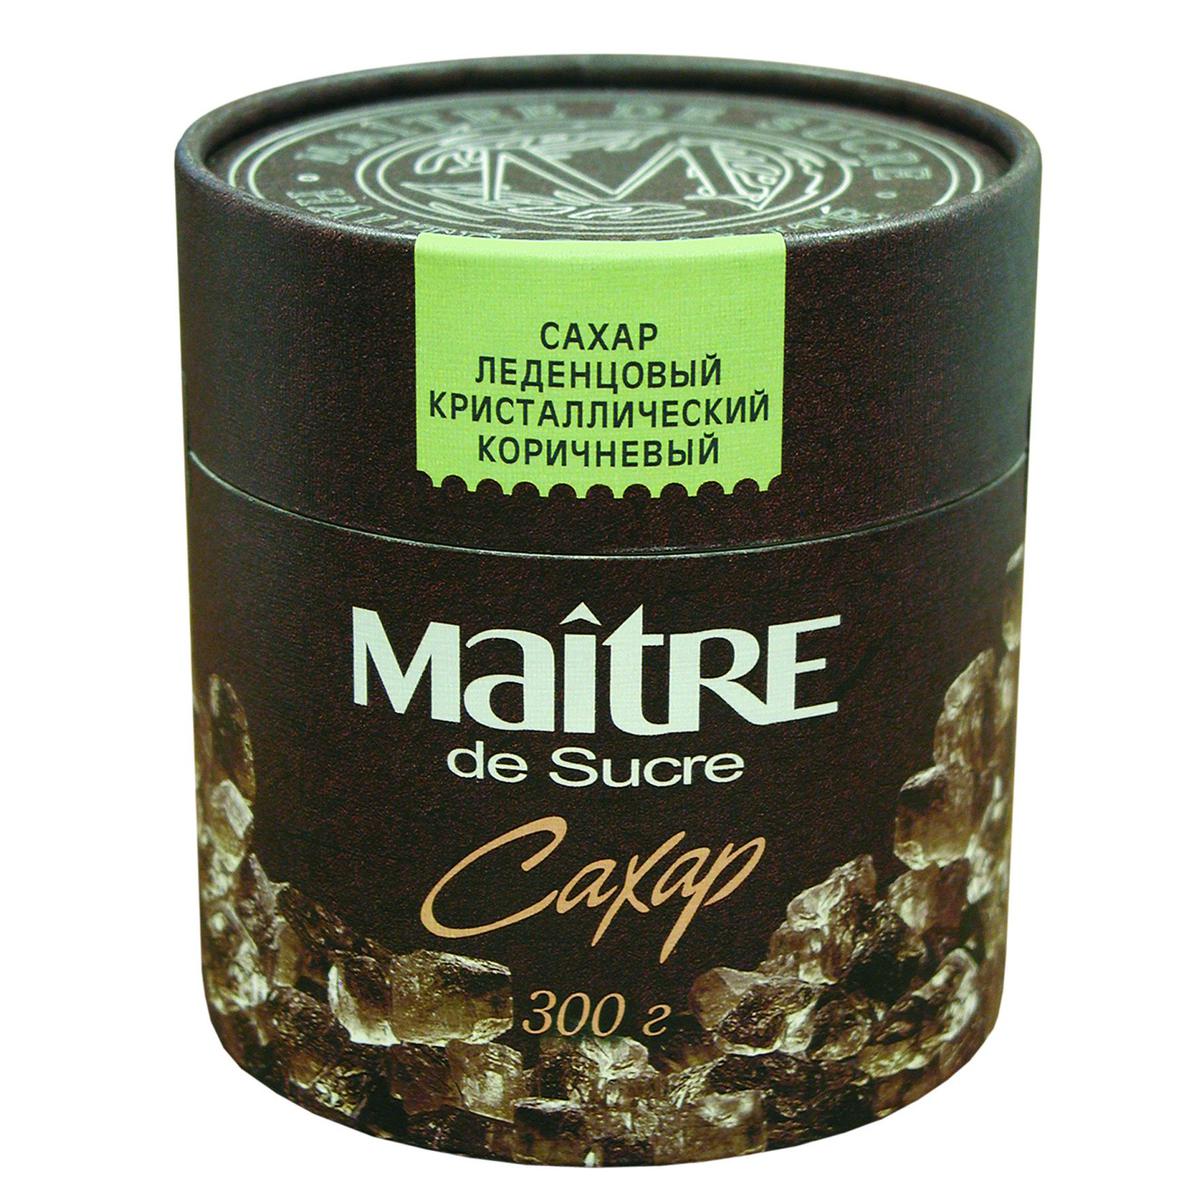 Сахар Maitre de Sucre коричневый леденцовый 300 г